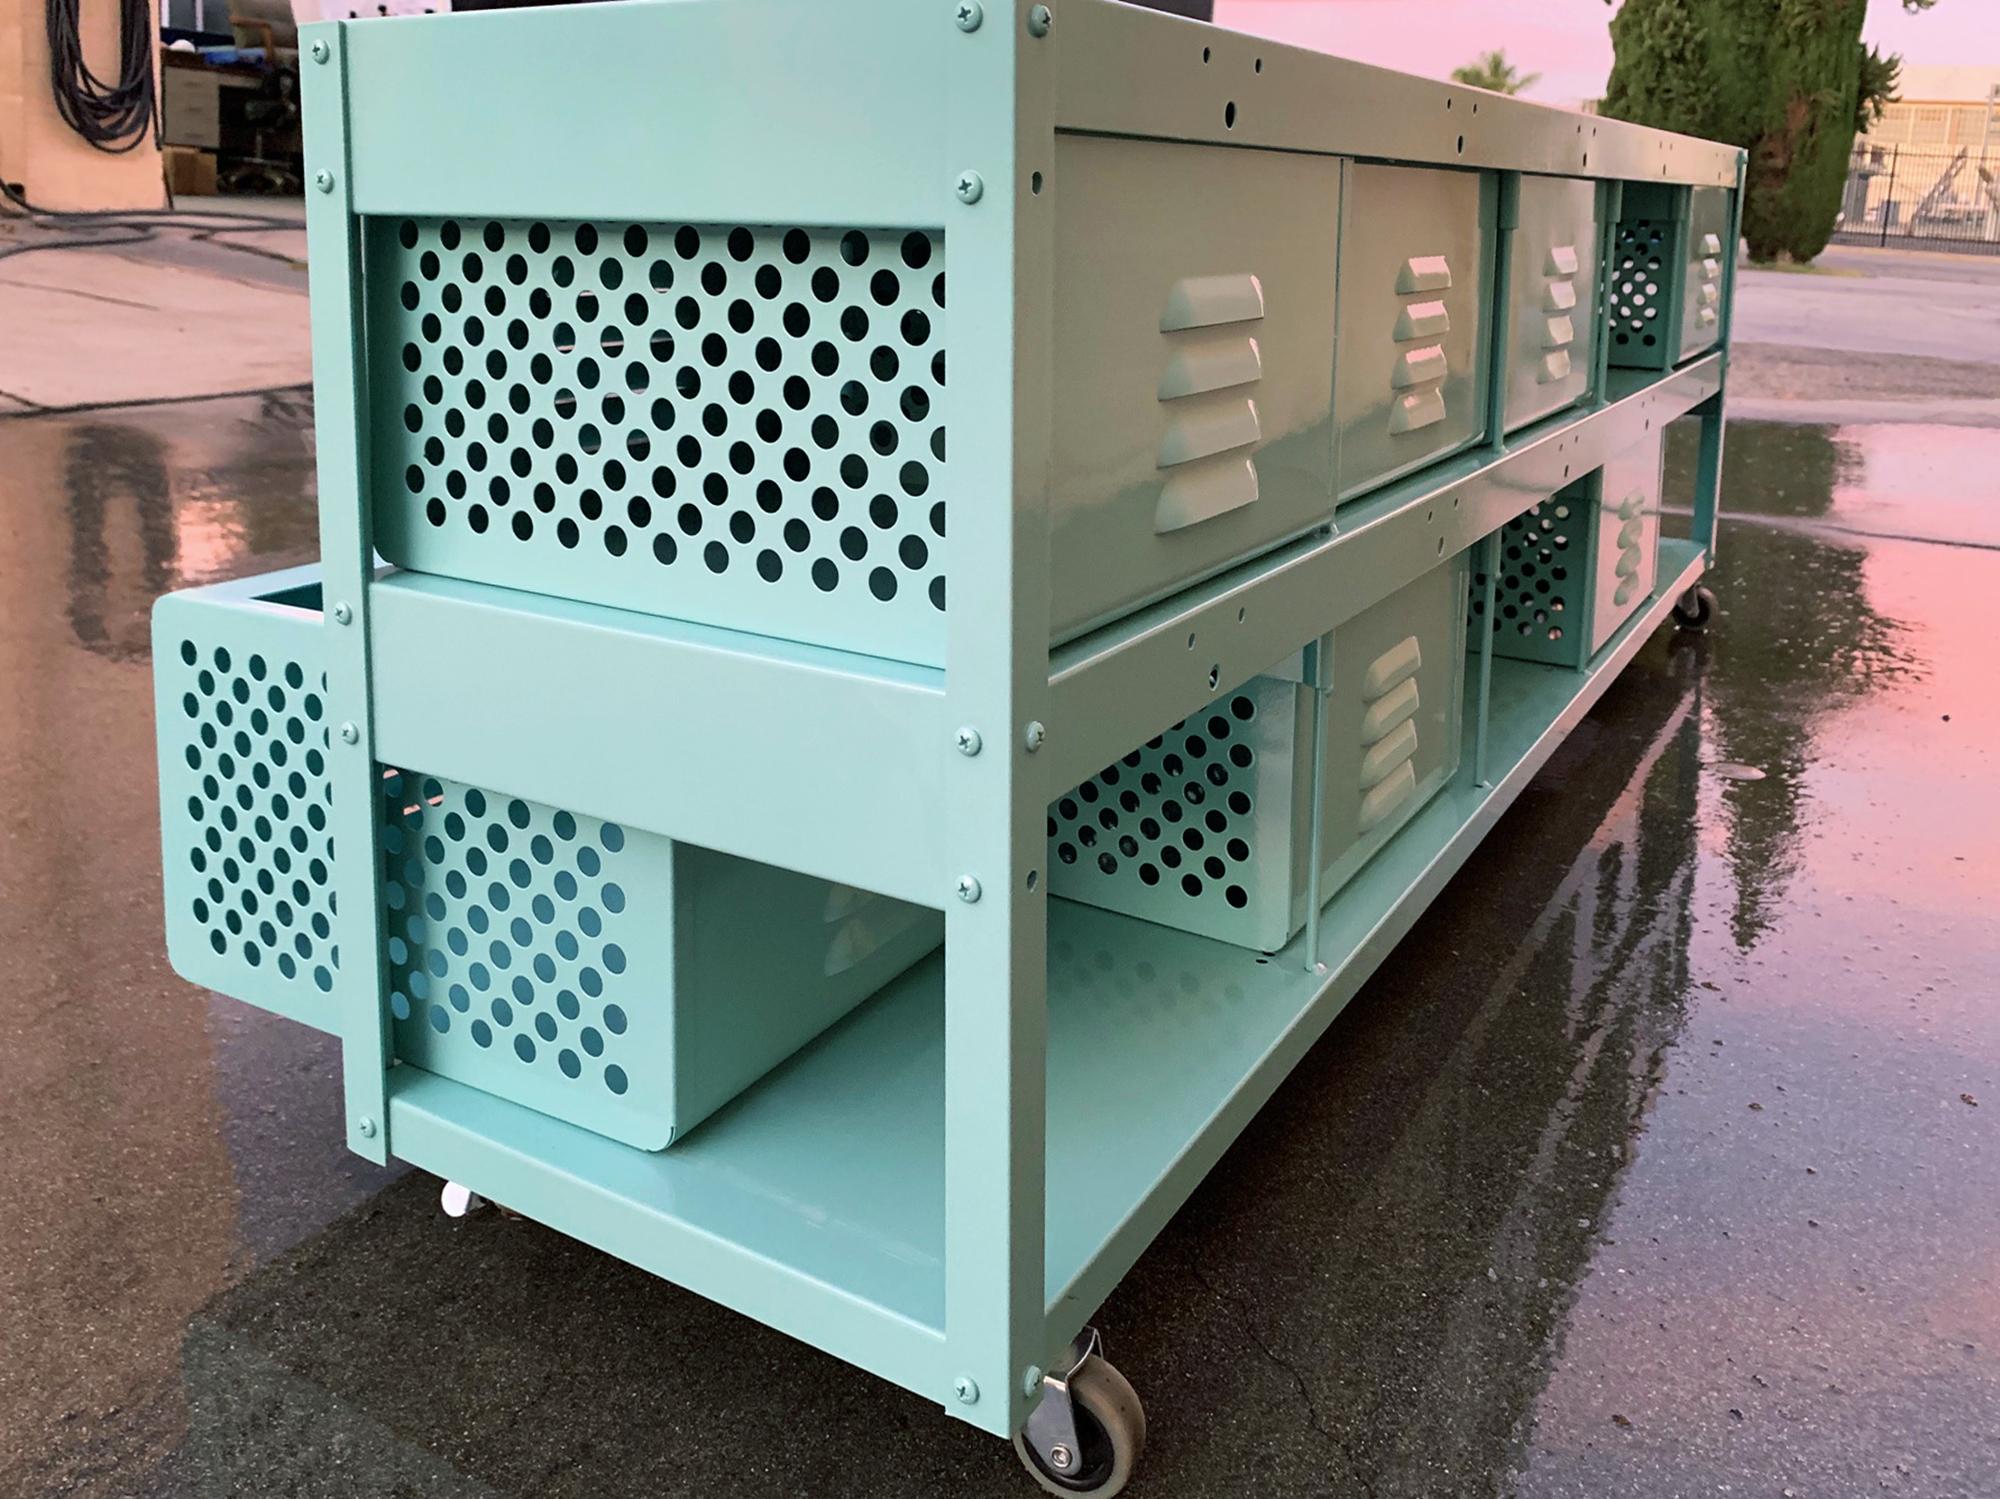 American Custom 5 x 2 Locker Basket Unit in Monochrome Sea Foam Green For Sale